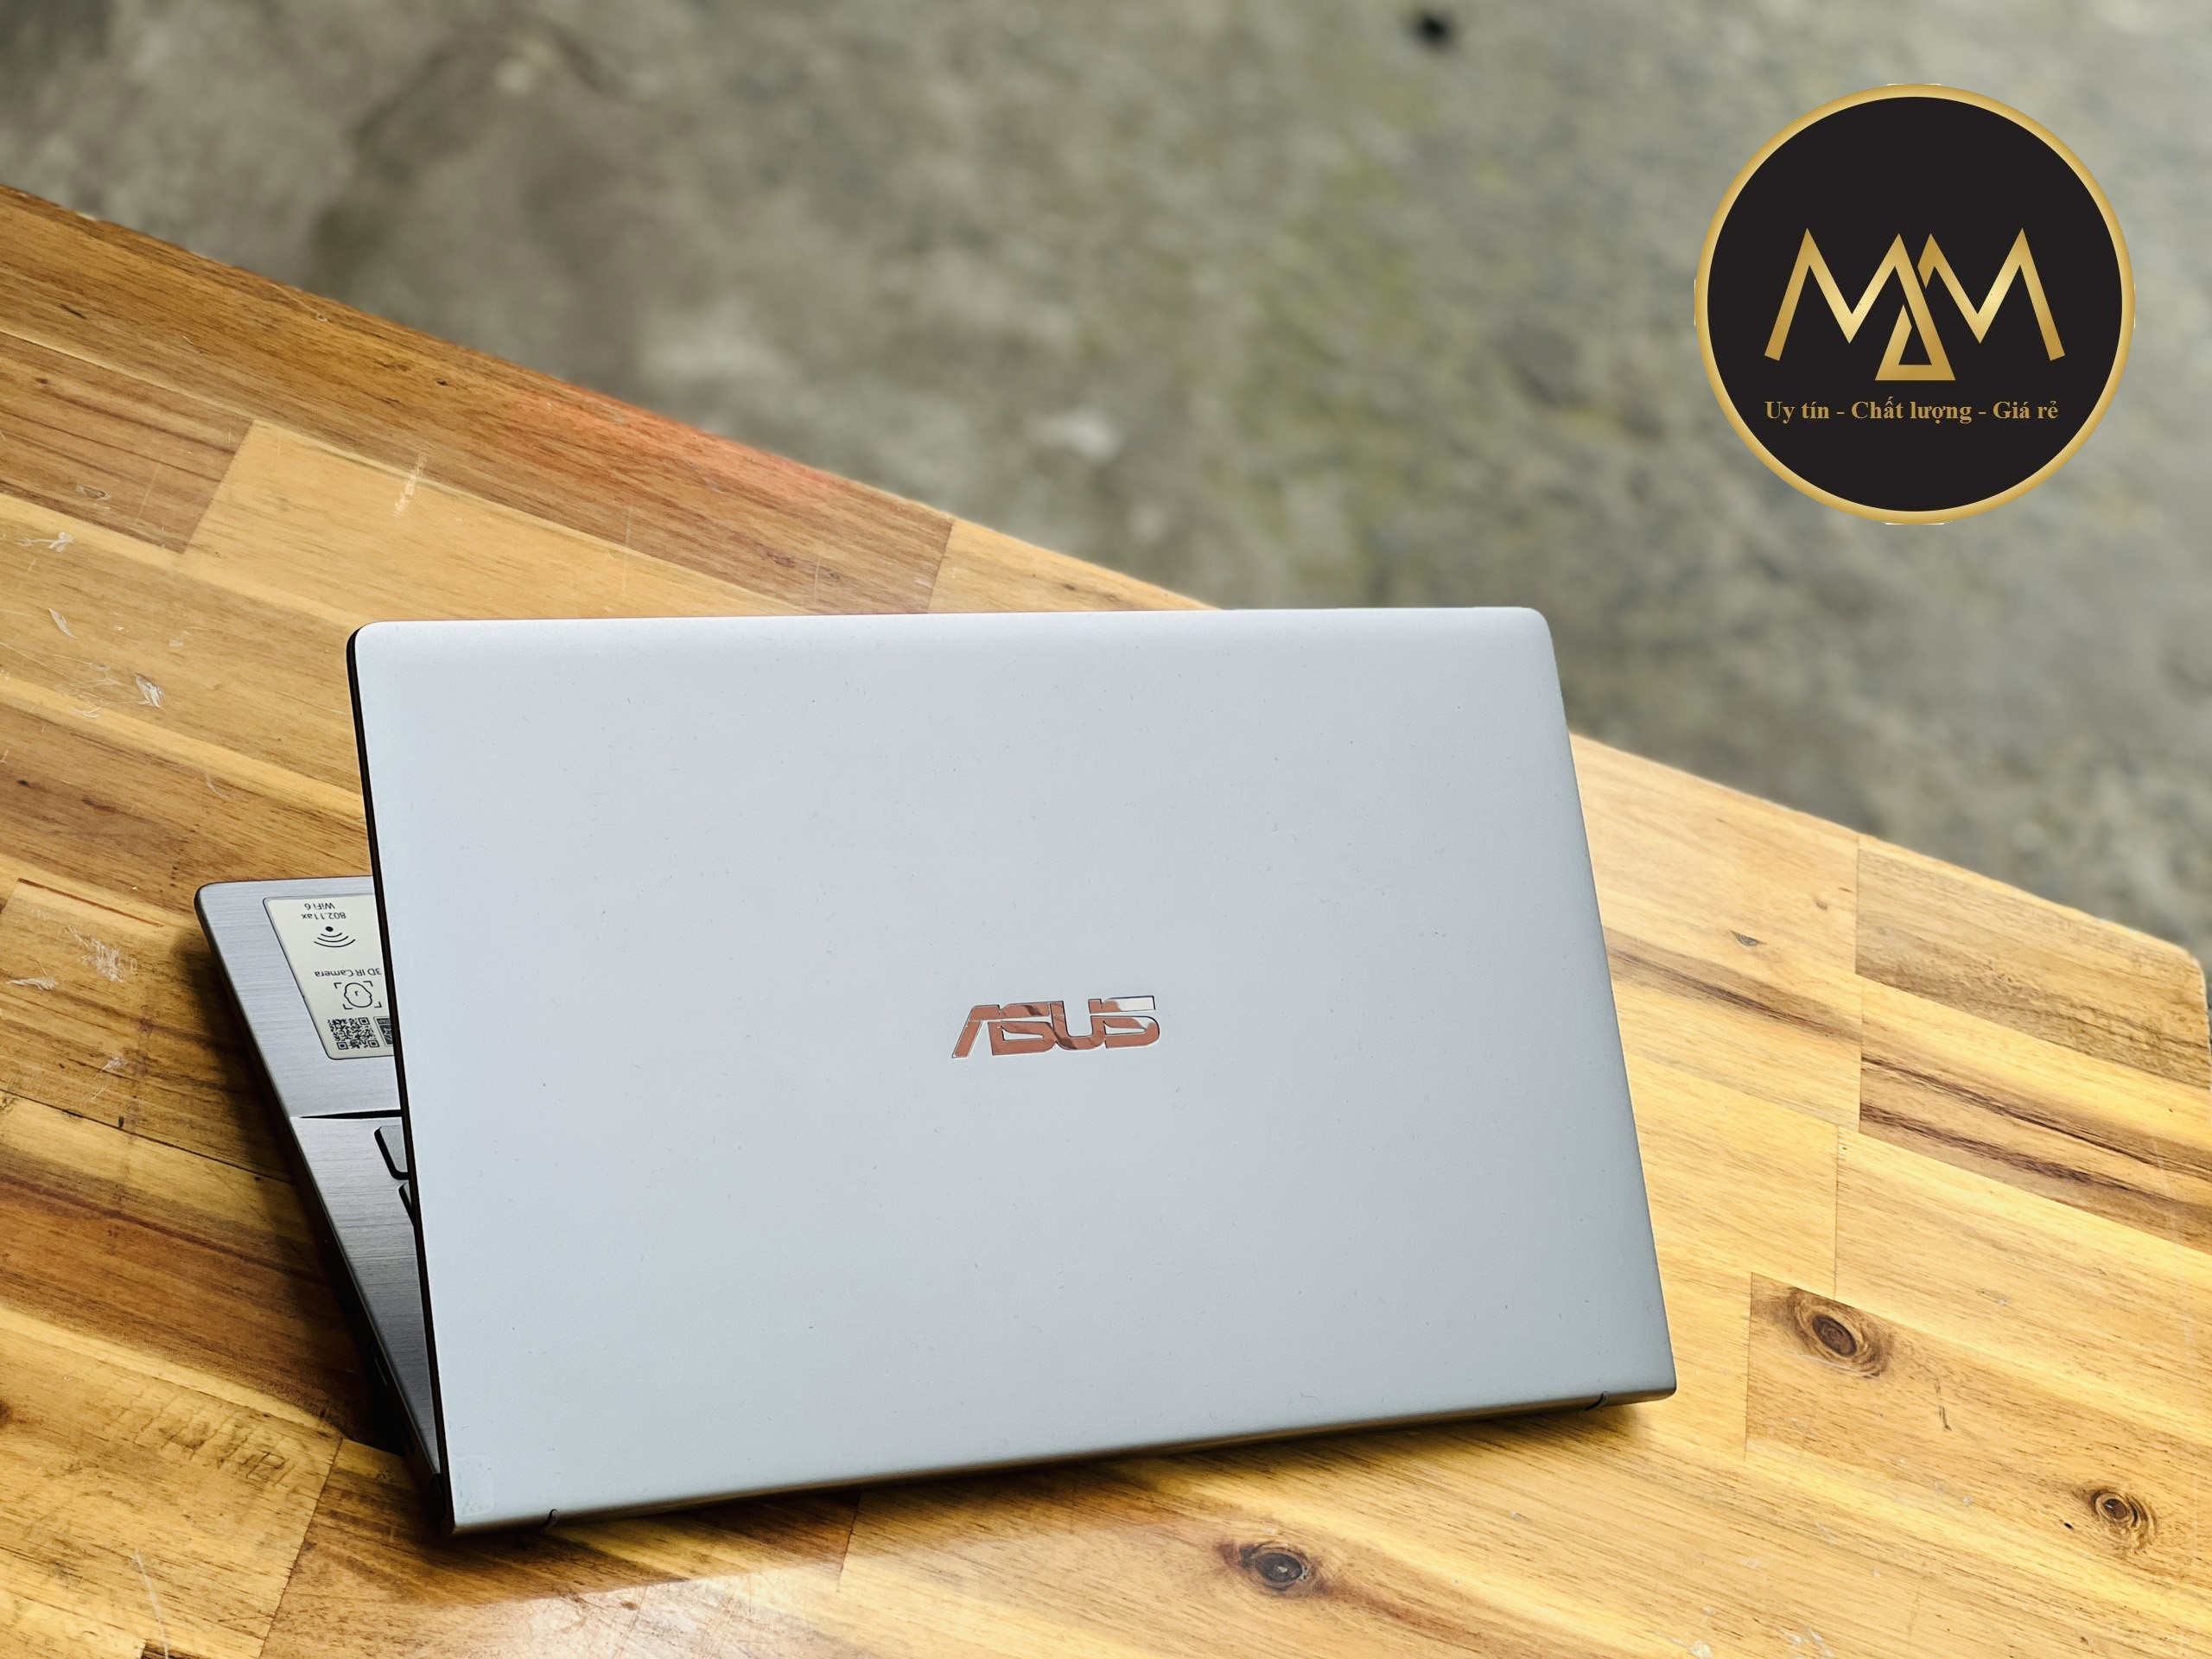 Laptop Asus Zenbook Q407iq Ryzen 5 4500/ 8G/ SSD256/ Vga MX350/ Face ID/ LED PHÍM/ Vỏ Nhôm/ 14inch/ Giá rẻ1